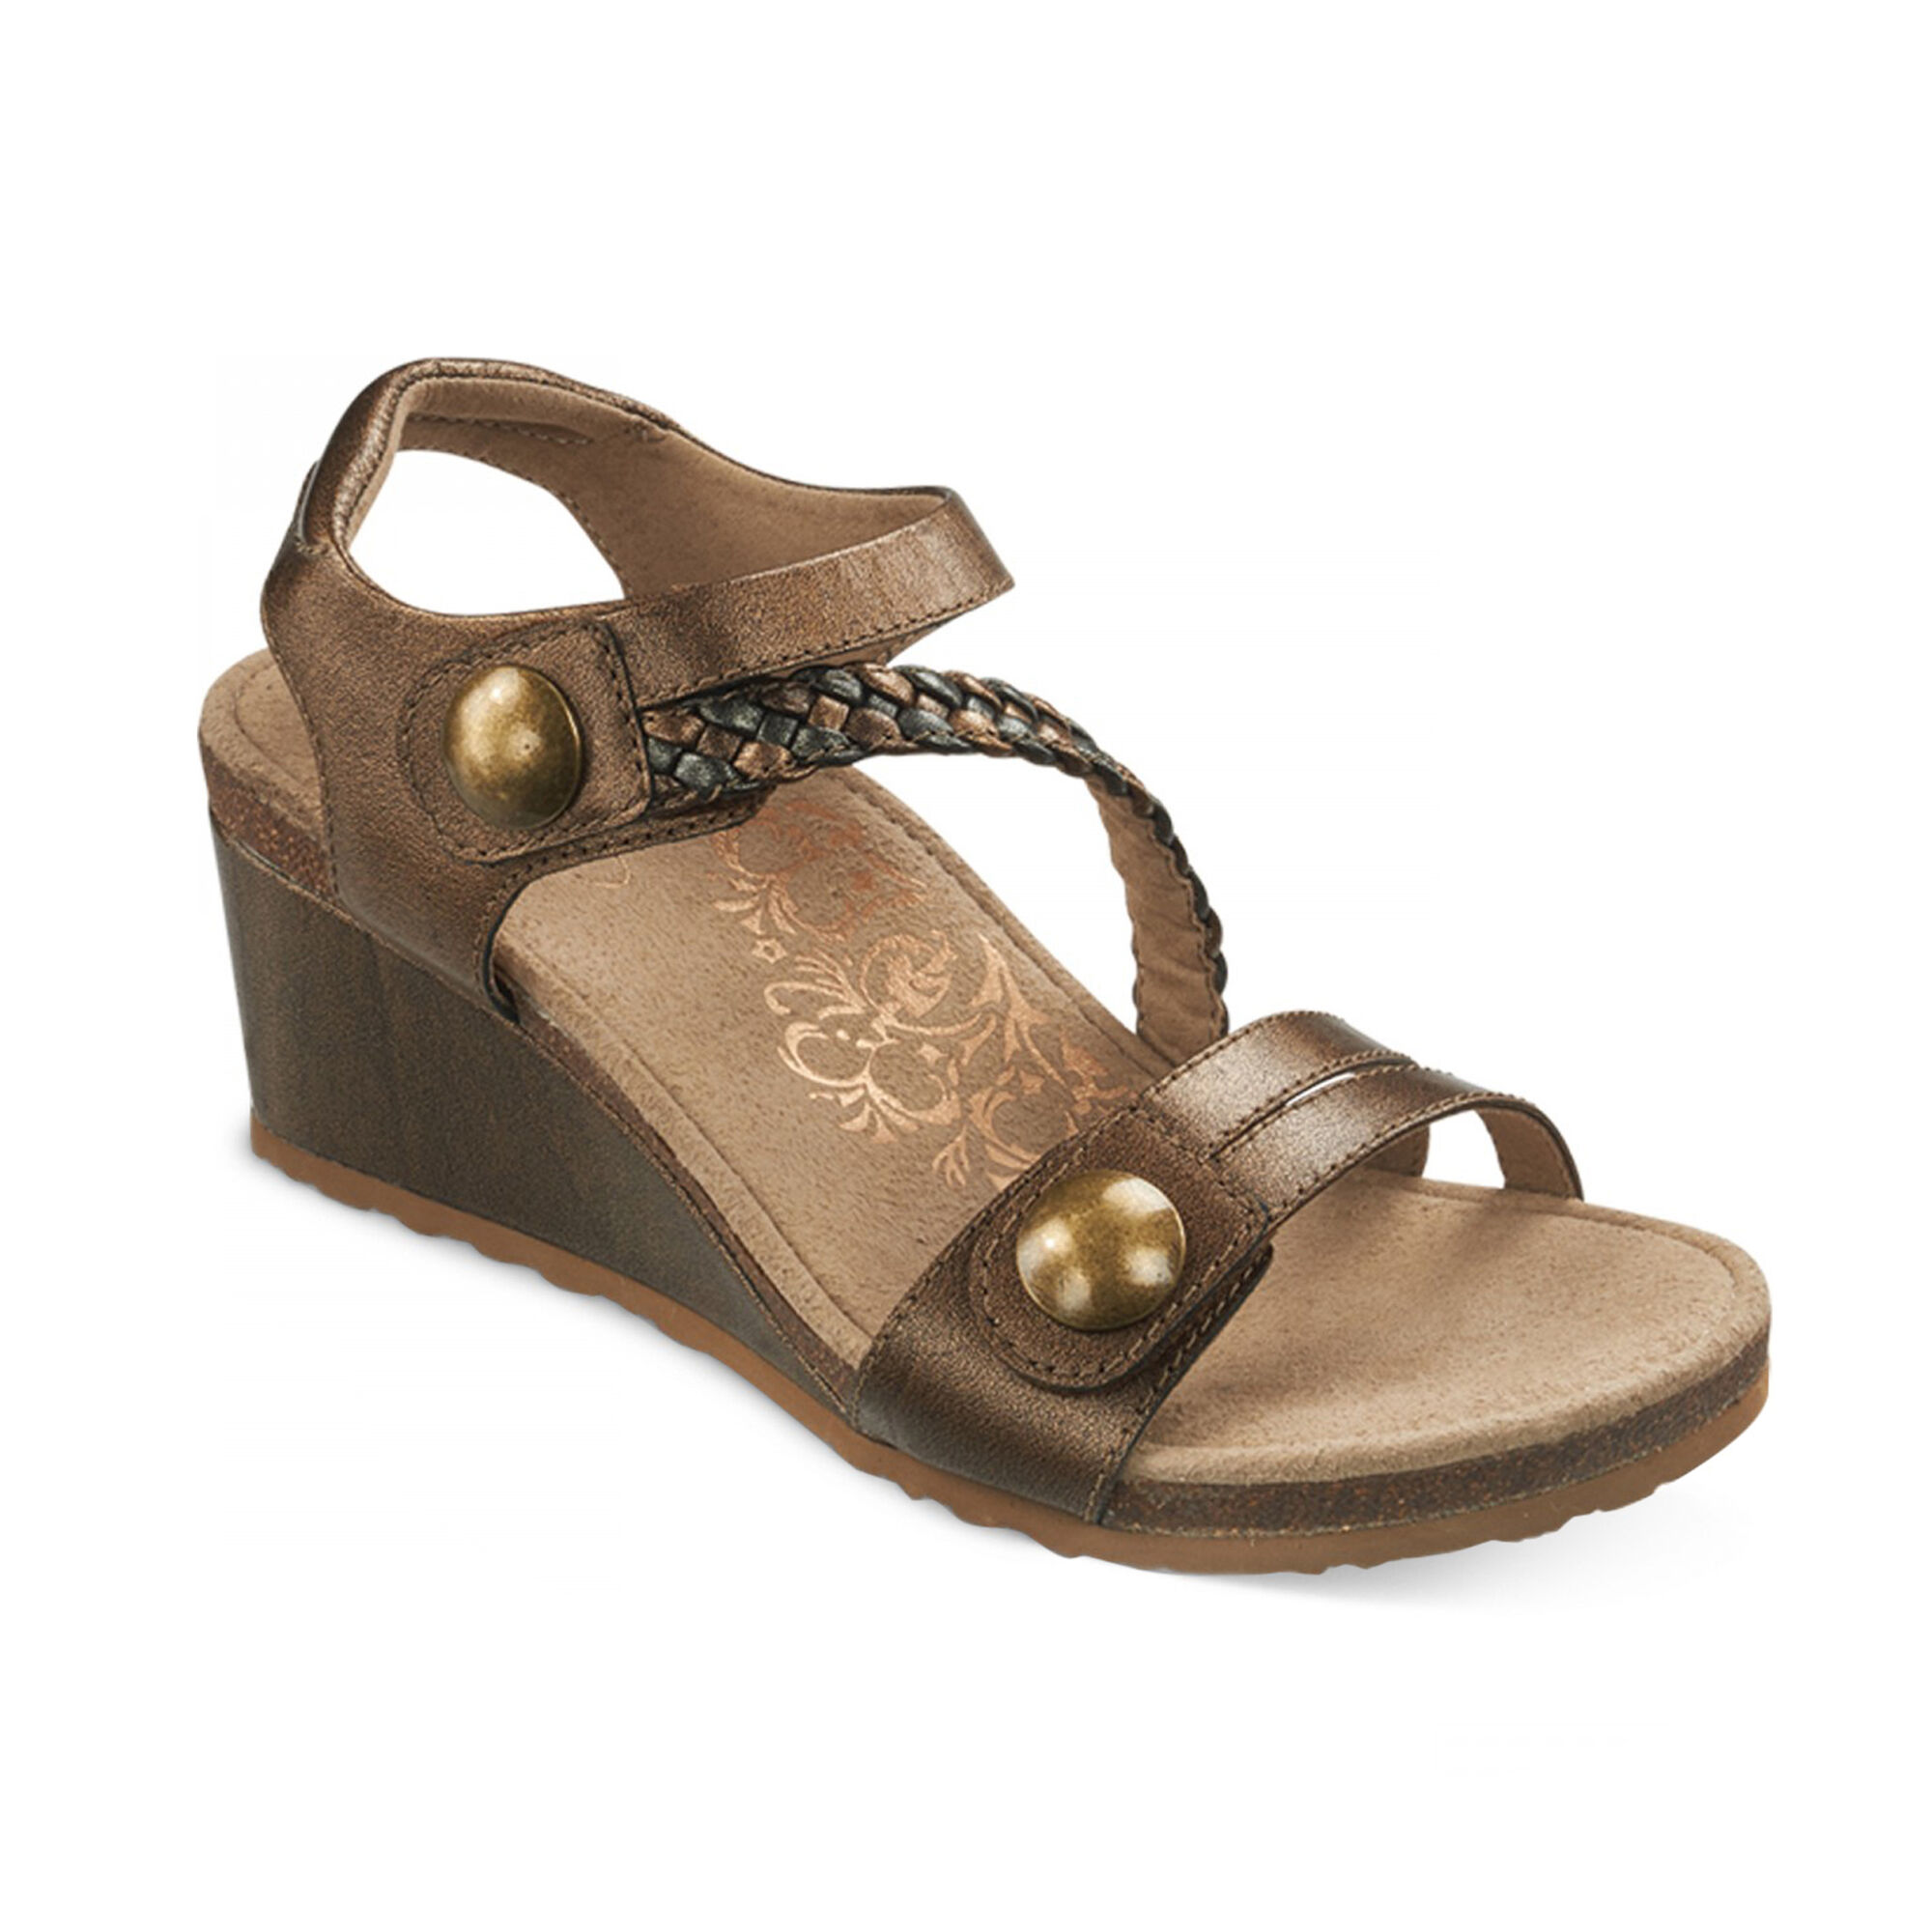 bronze wedge sandals